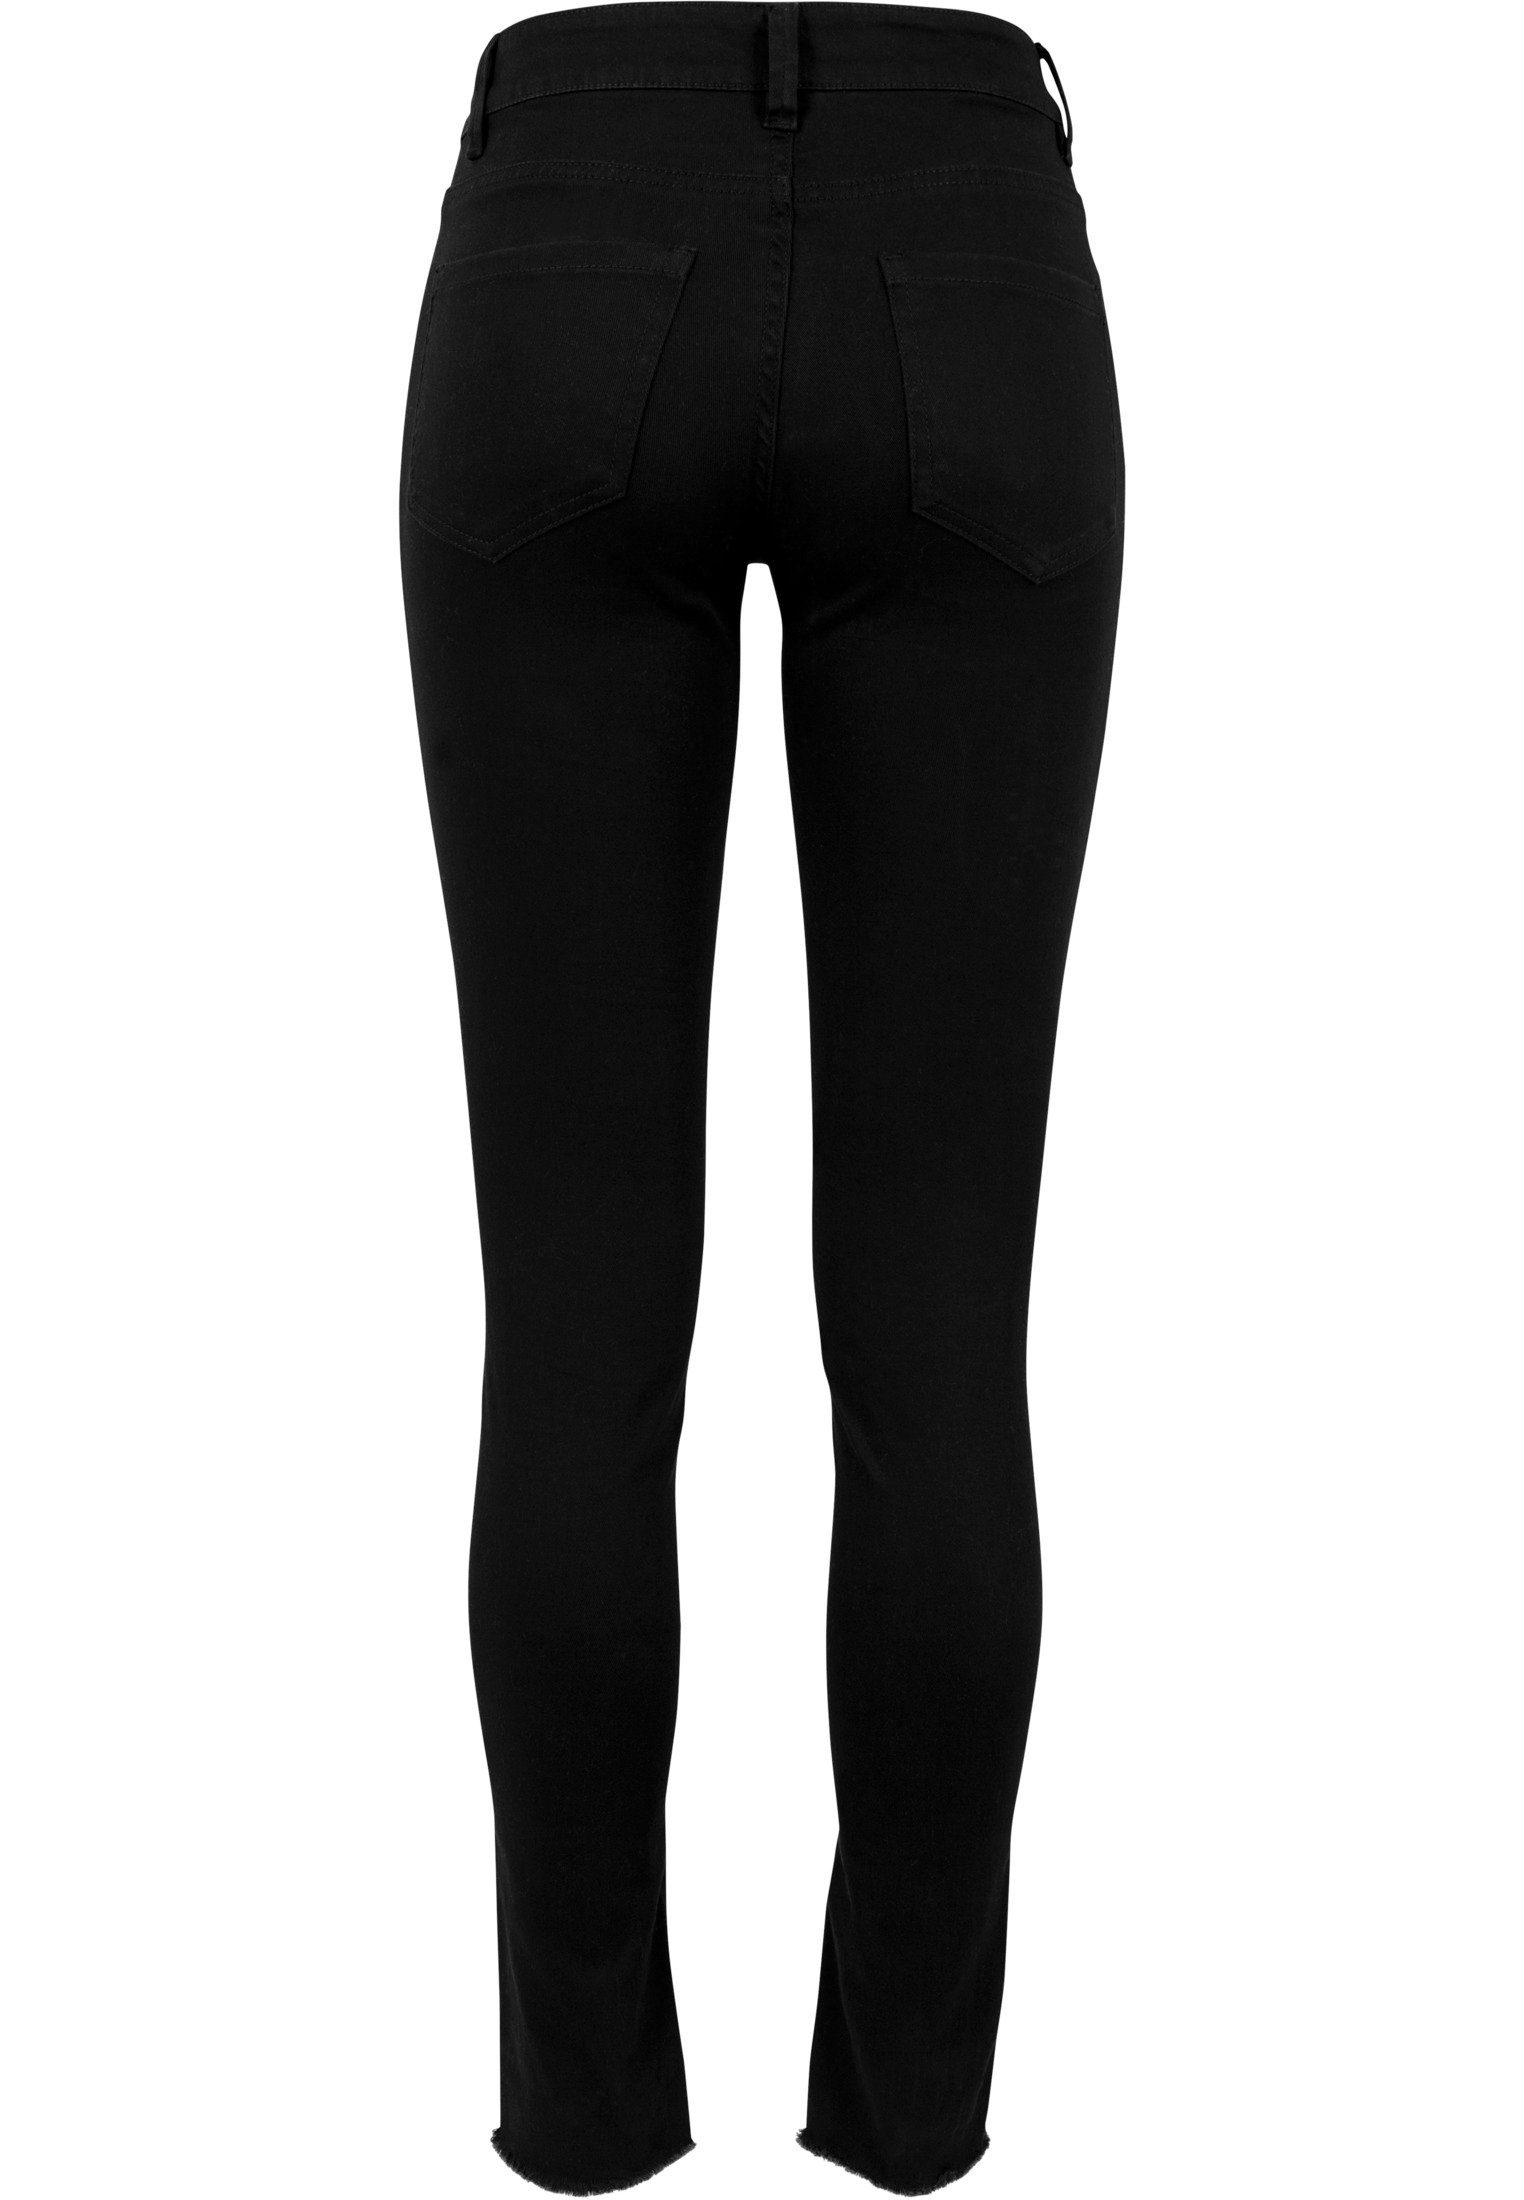 TB1538 CLASSICS Knee Skinny-fit-Jeans Cut black URBAN